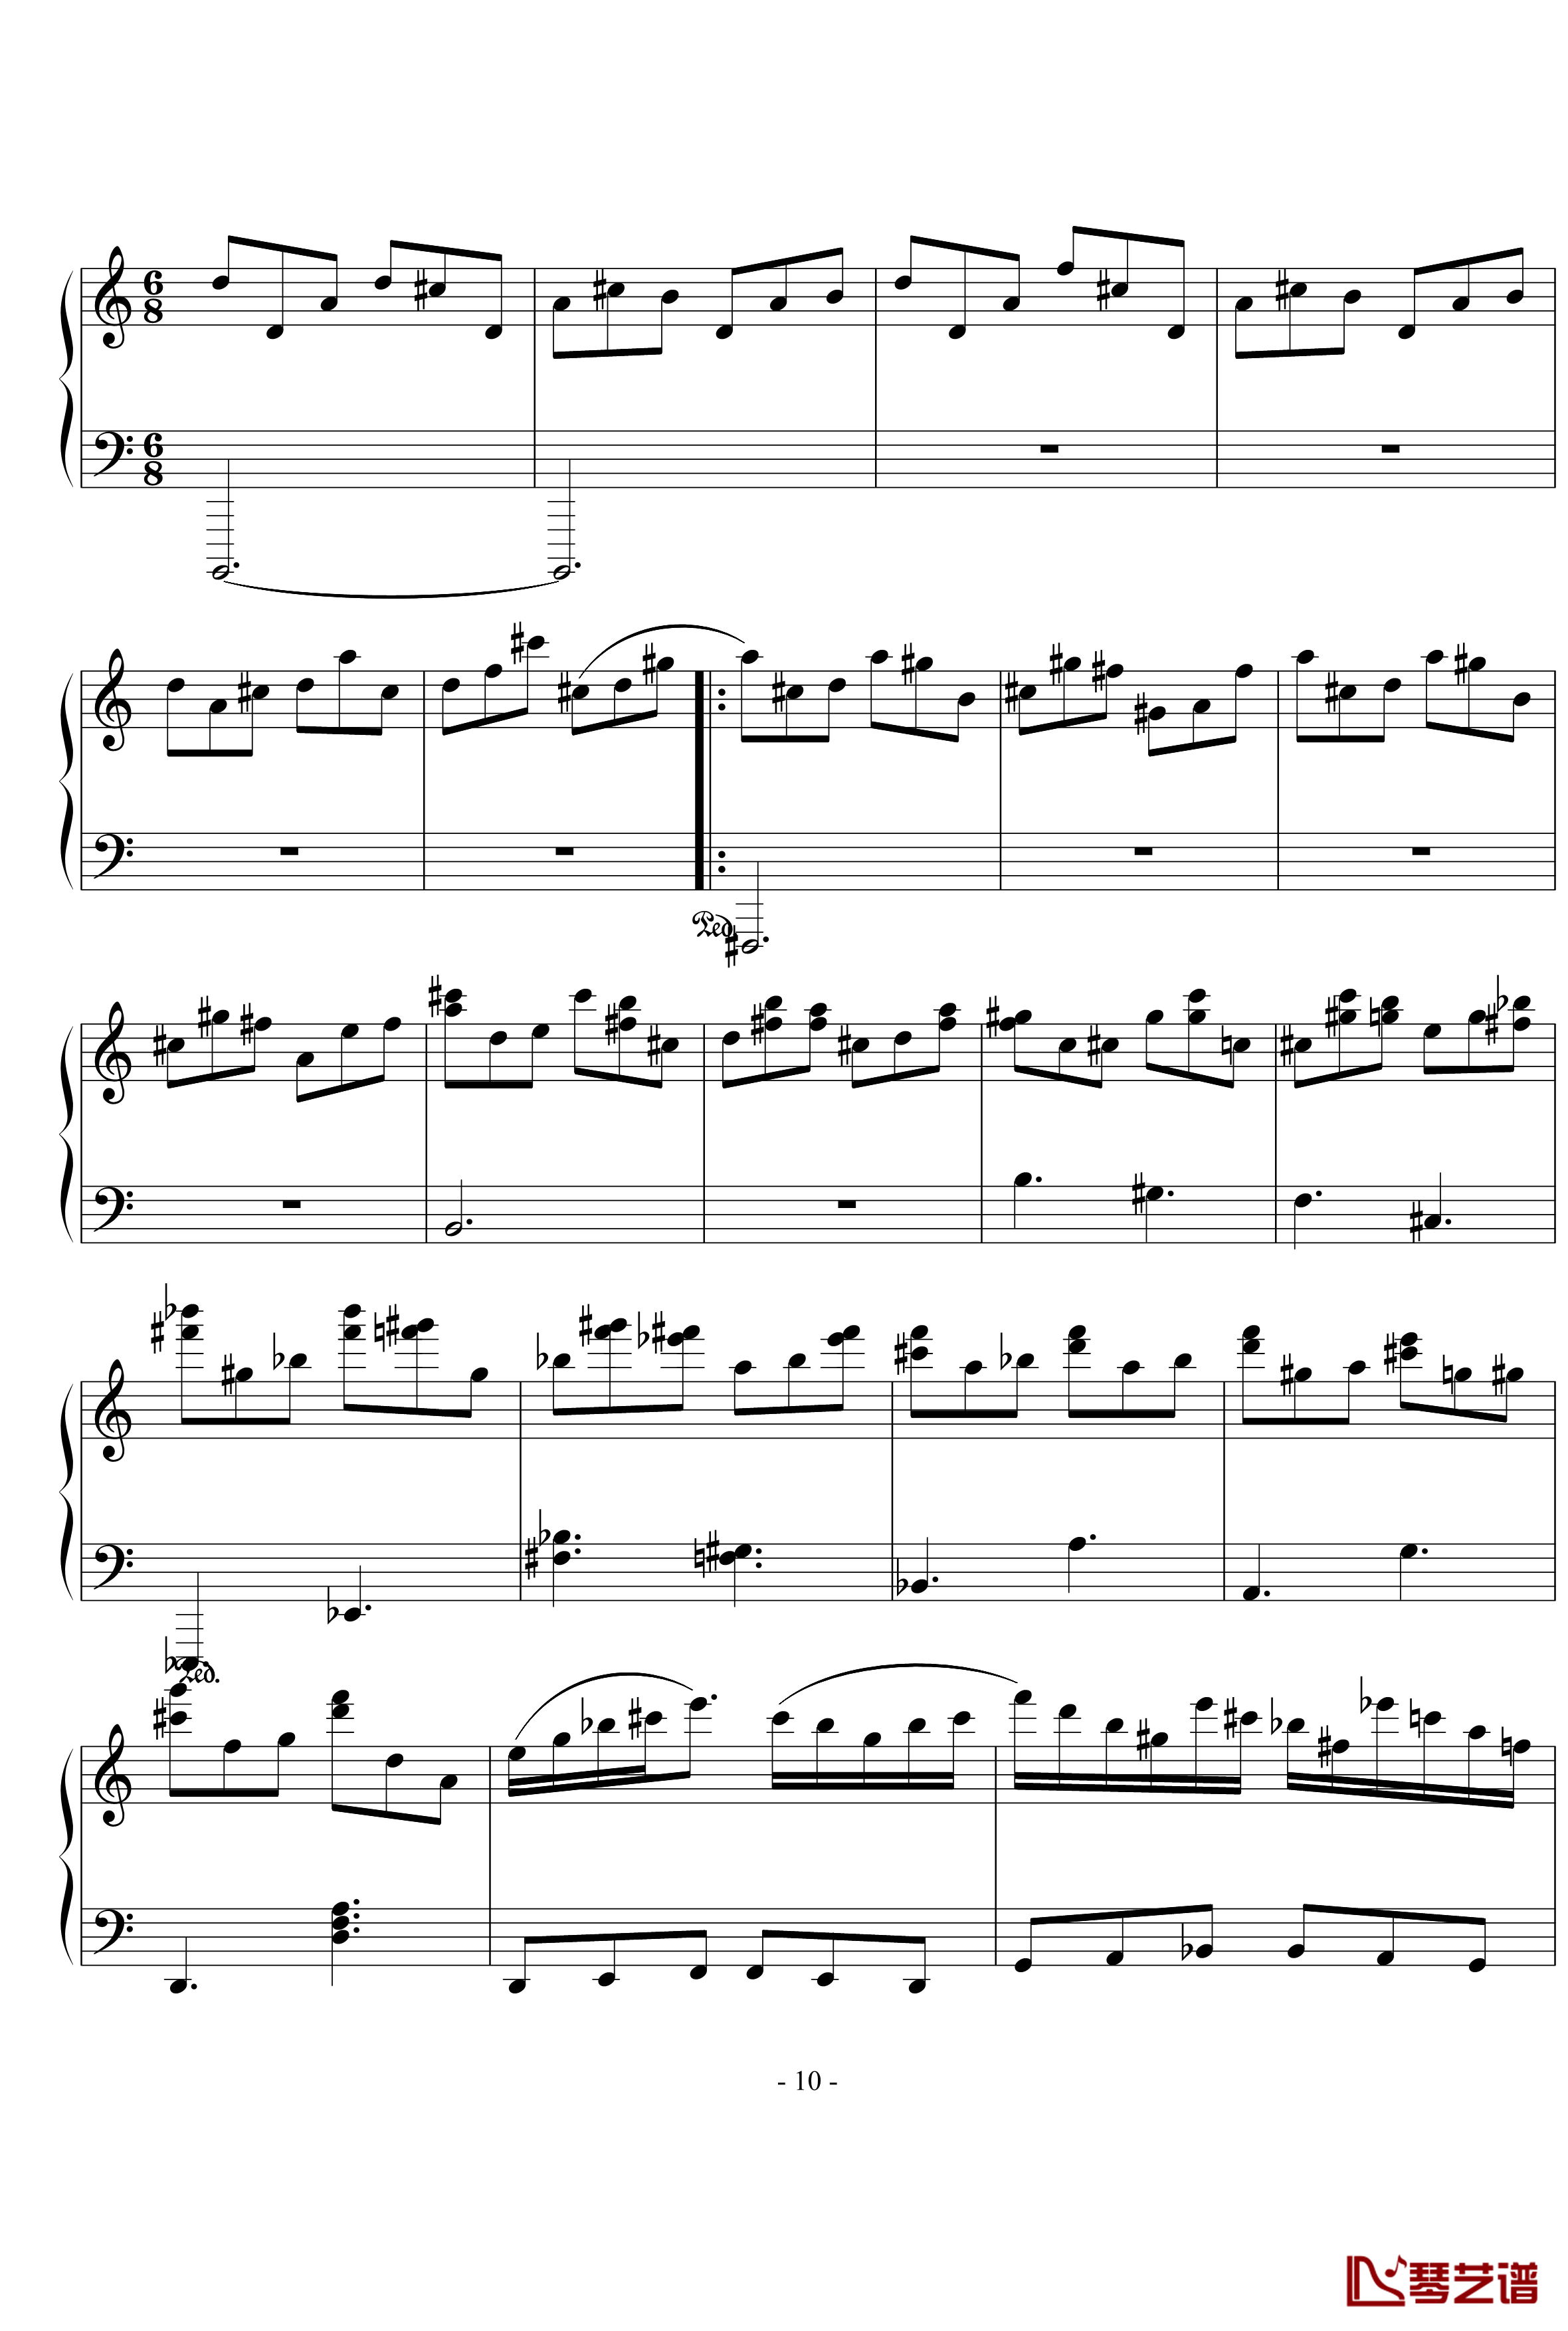 浪漫主义音乐的传统钢琴谱-幻想曲-D大调-流行追梦人10